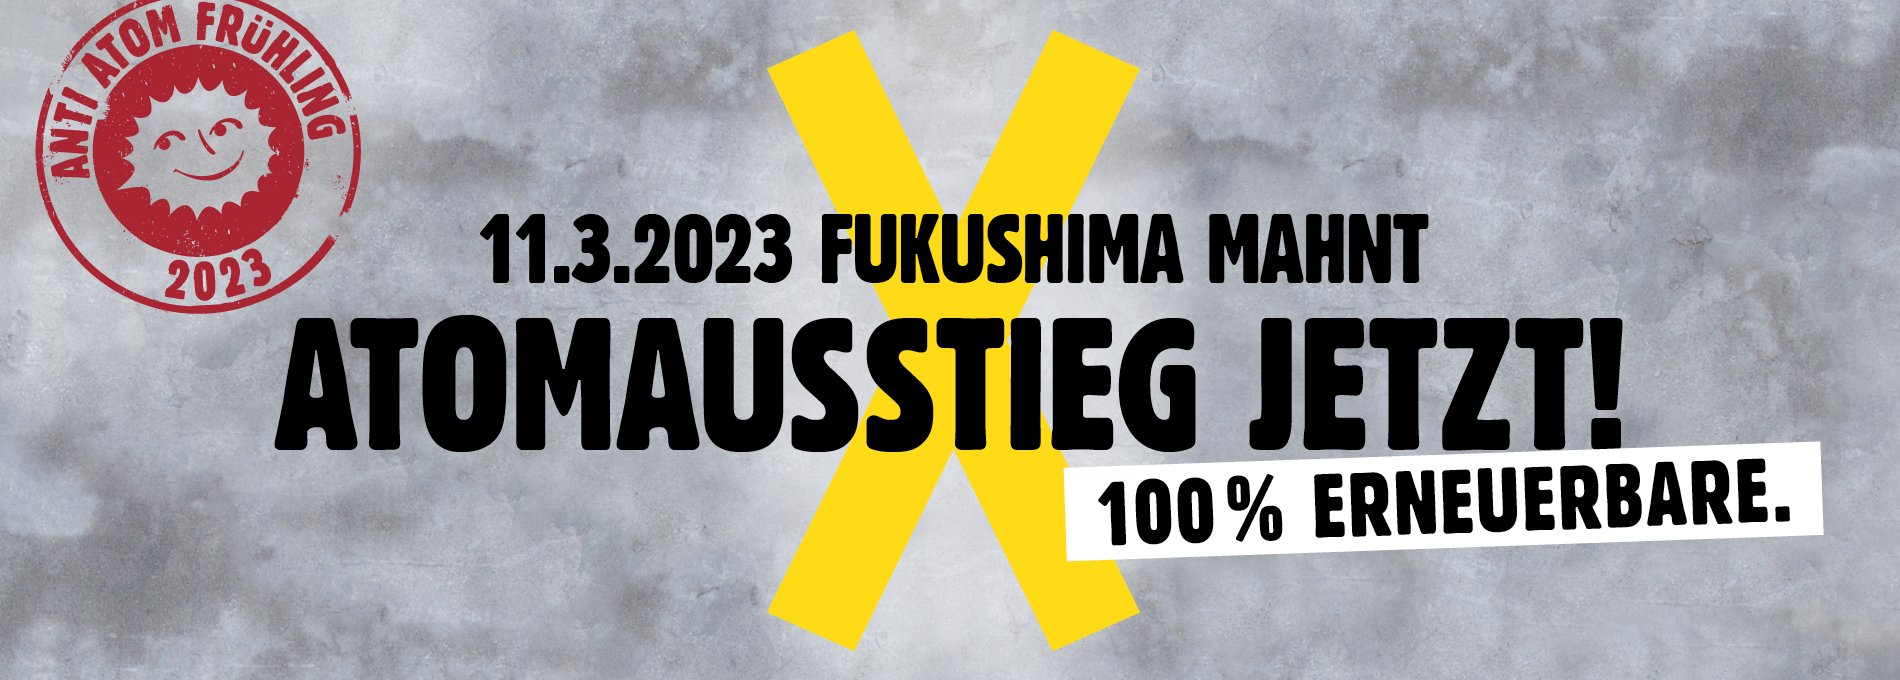 Fukushima_2023_header.png